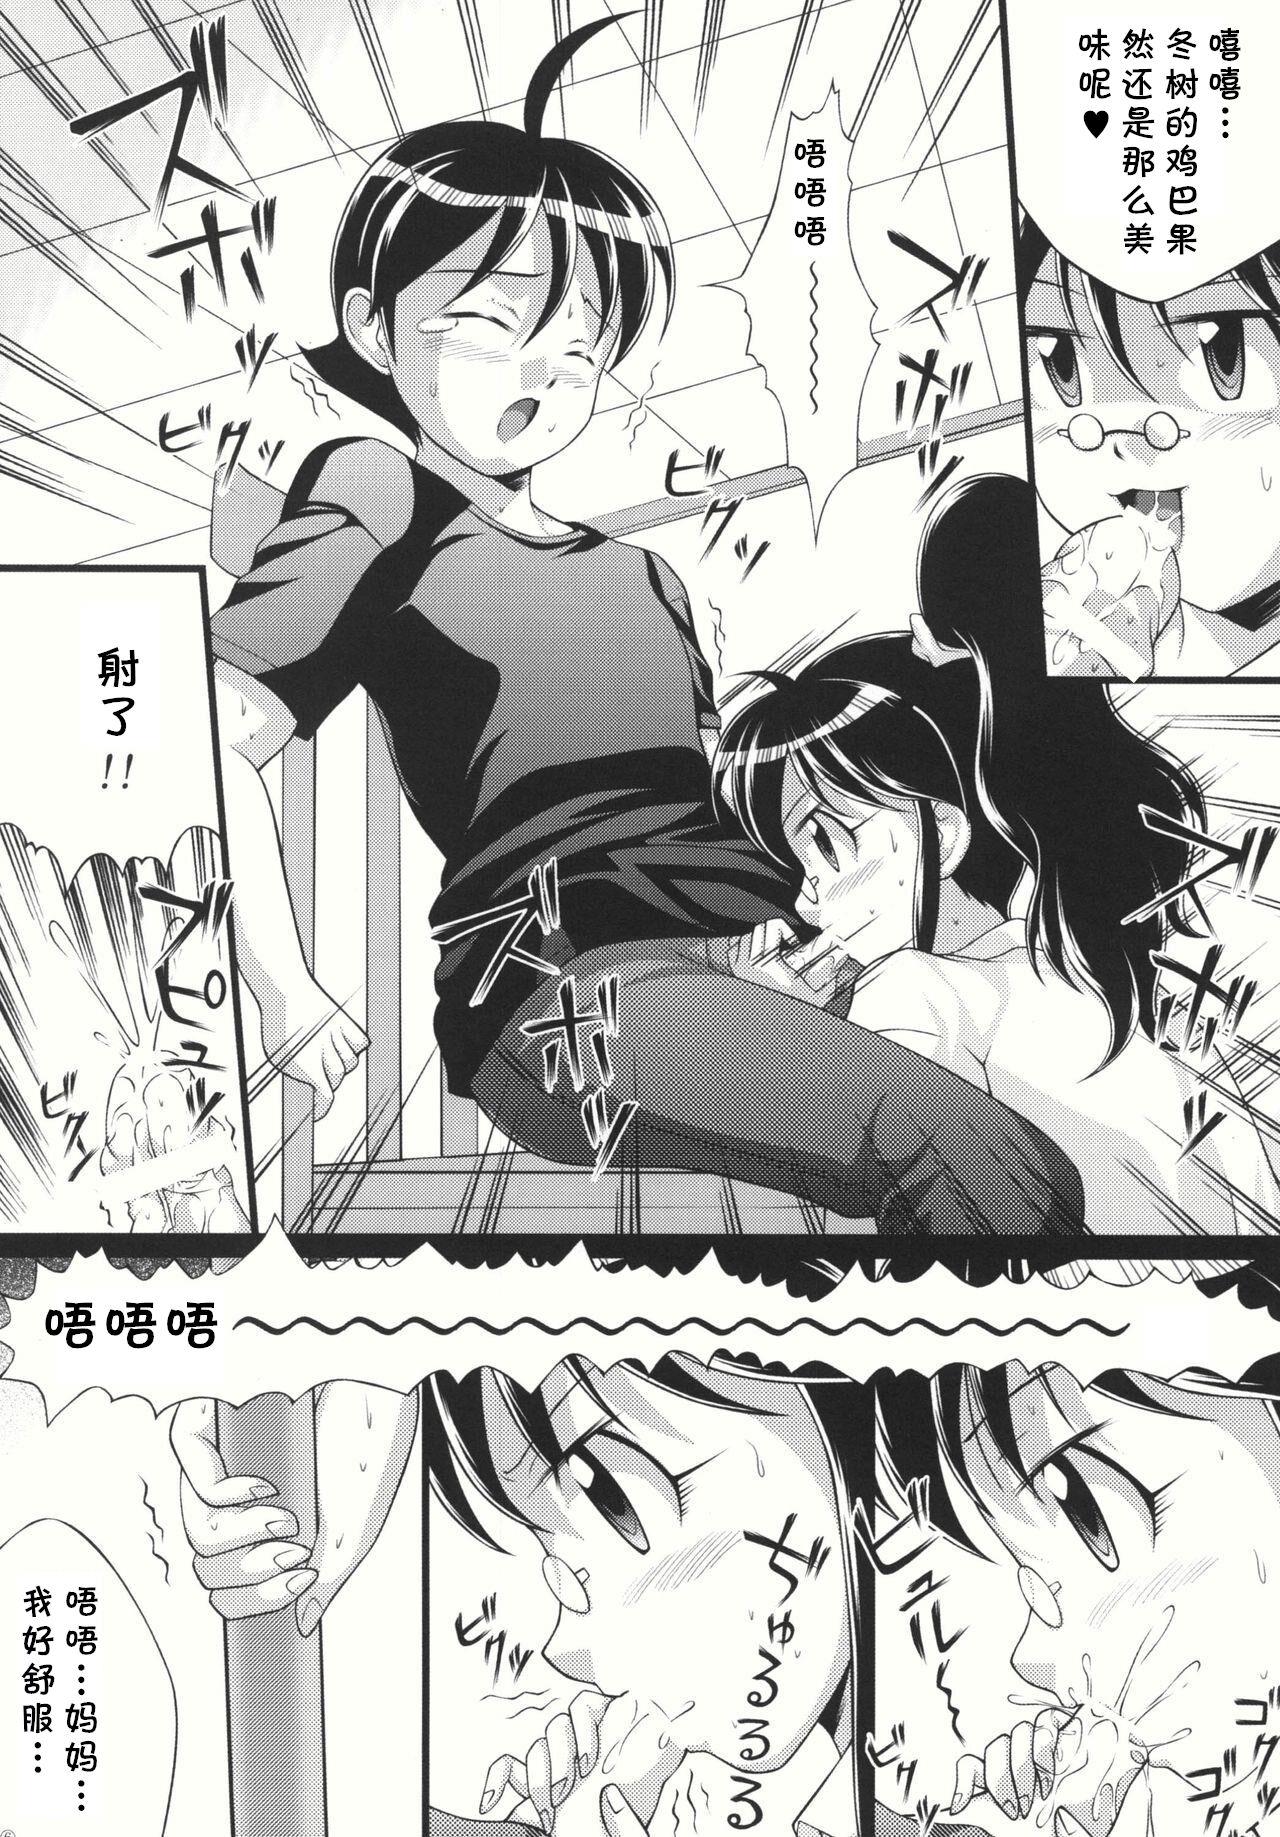 Bunduda Chikyuujin Maruhi Seitai Chousa Houkokusho 4 - Keroro gunsou | sgt. frog Asshole - Page 8